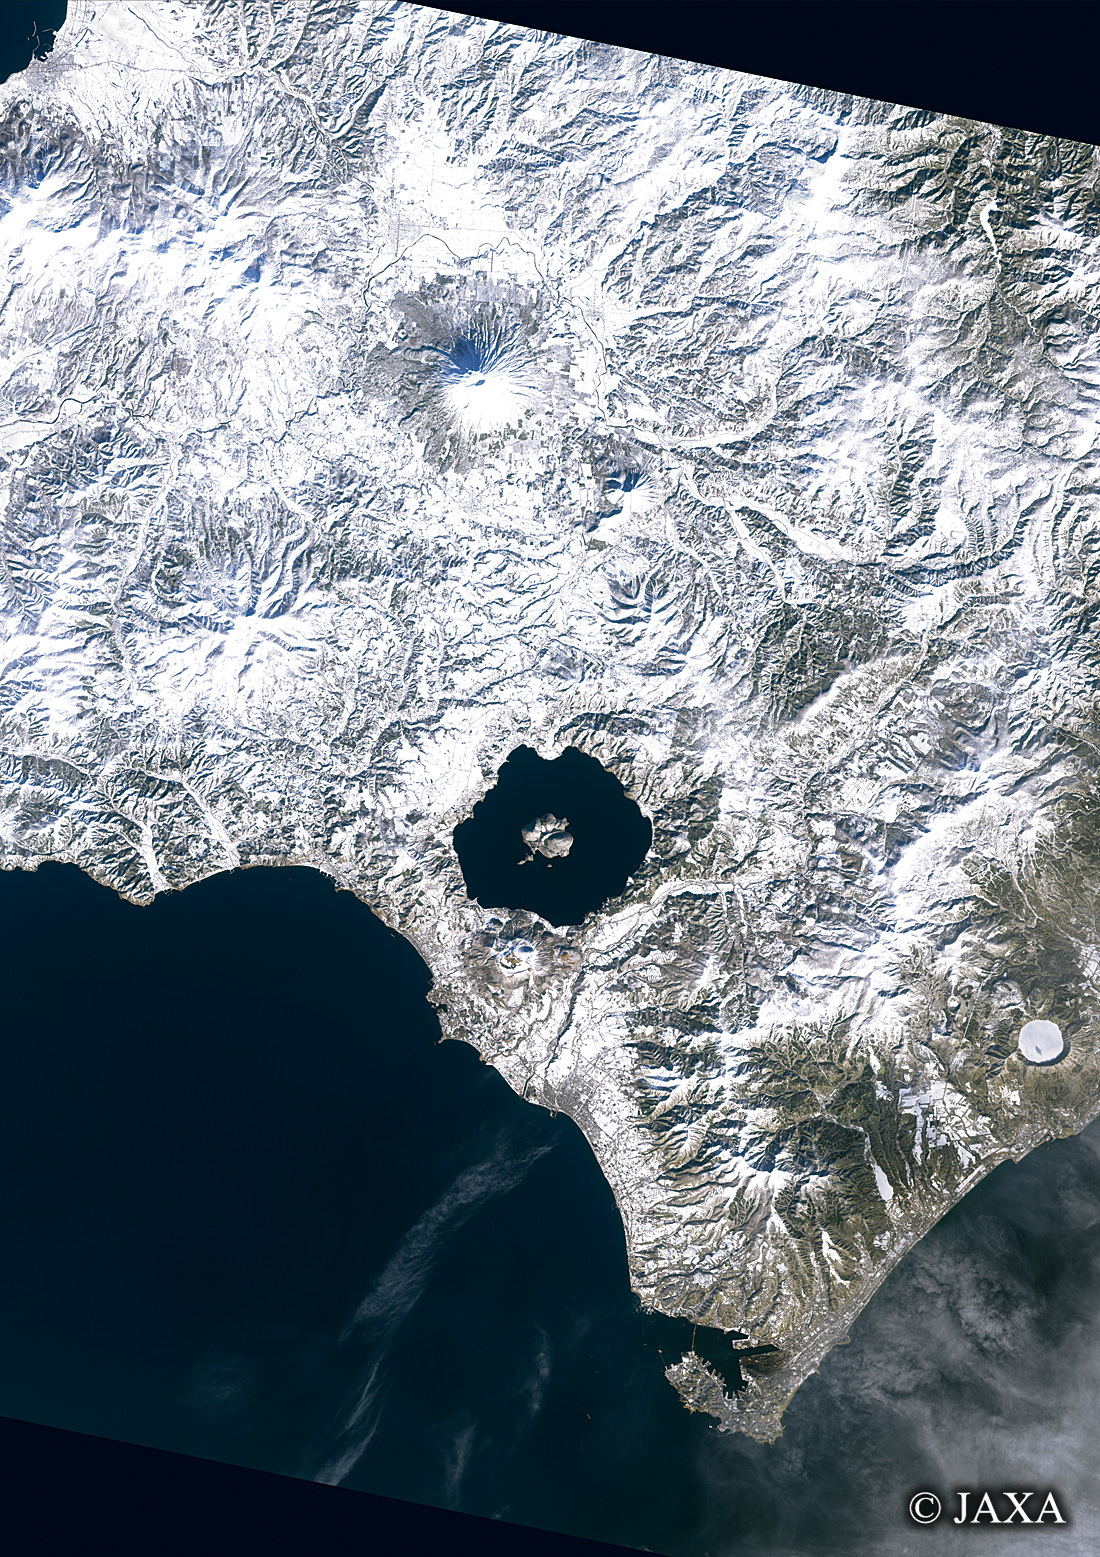 だいちから見た日本の都市 冬の洞爺湖:衛星画像